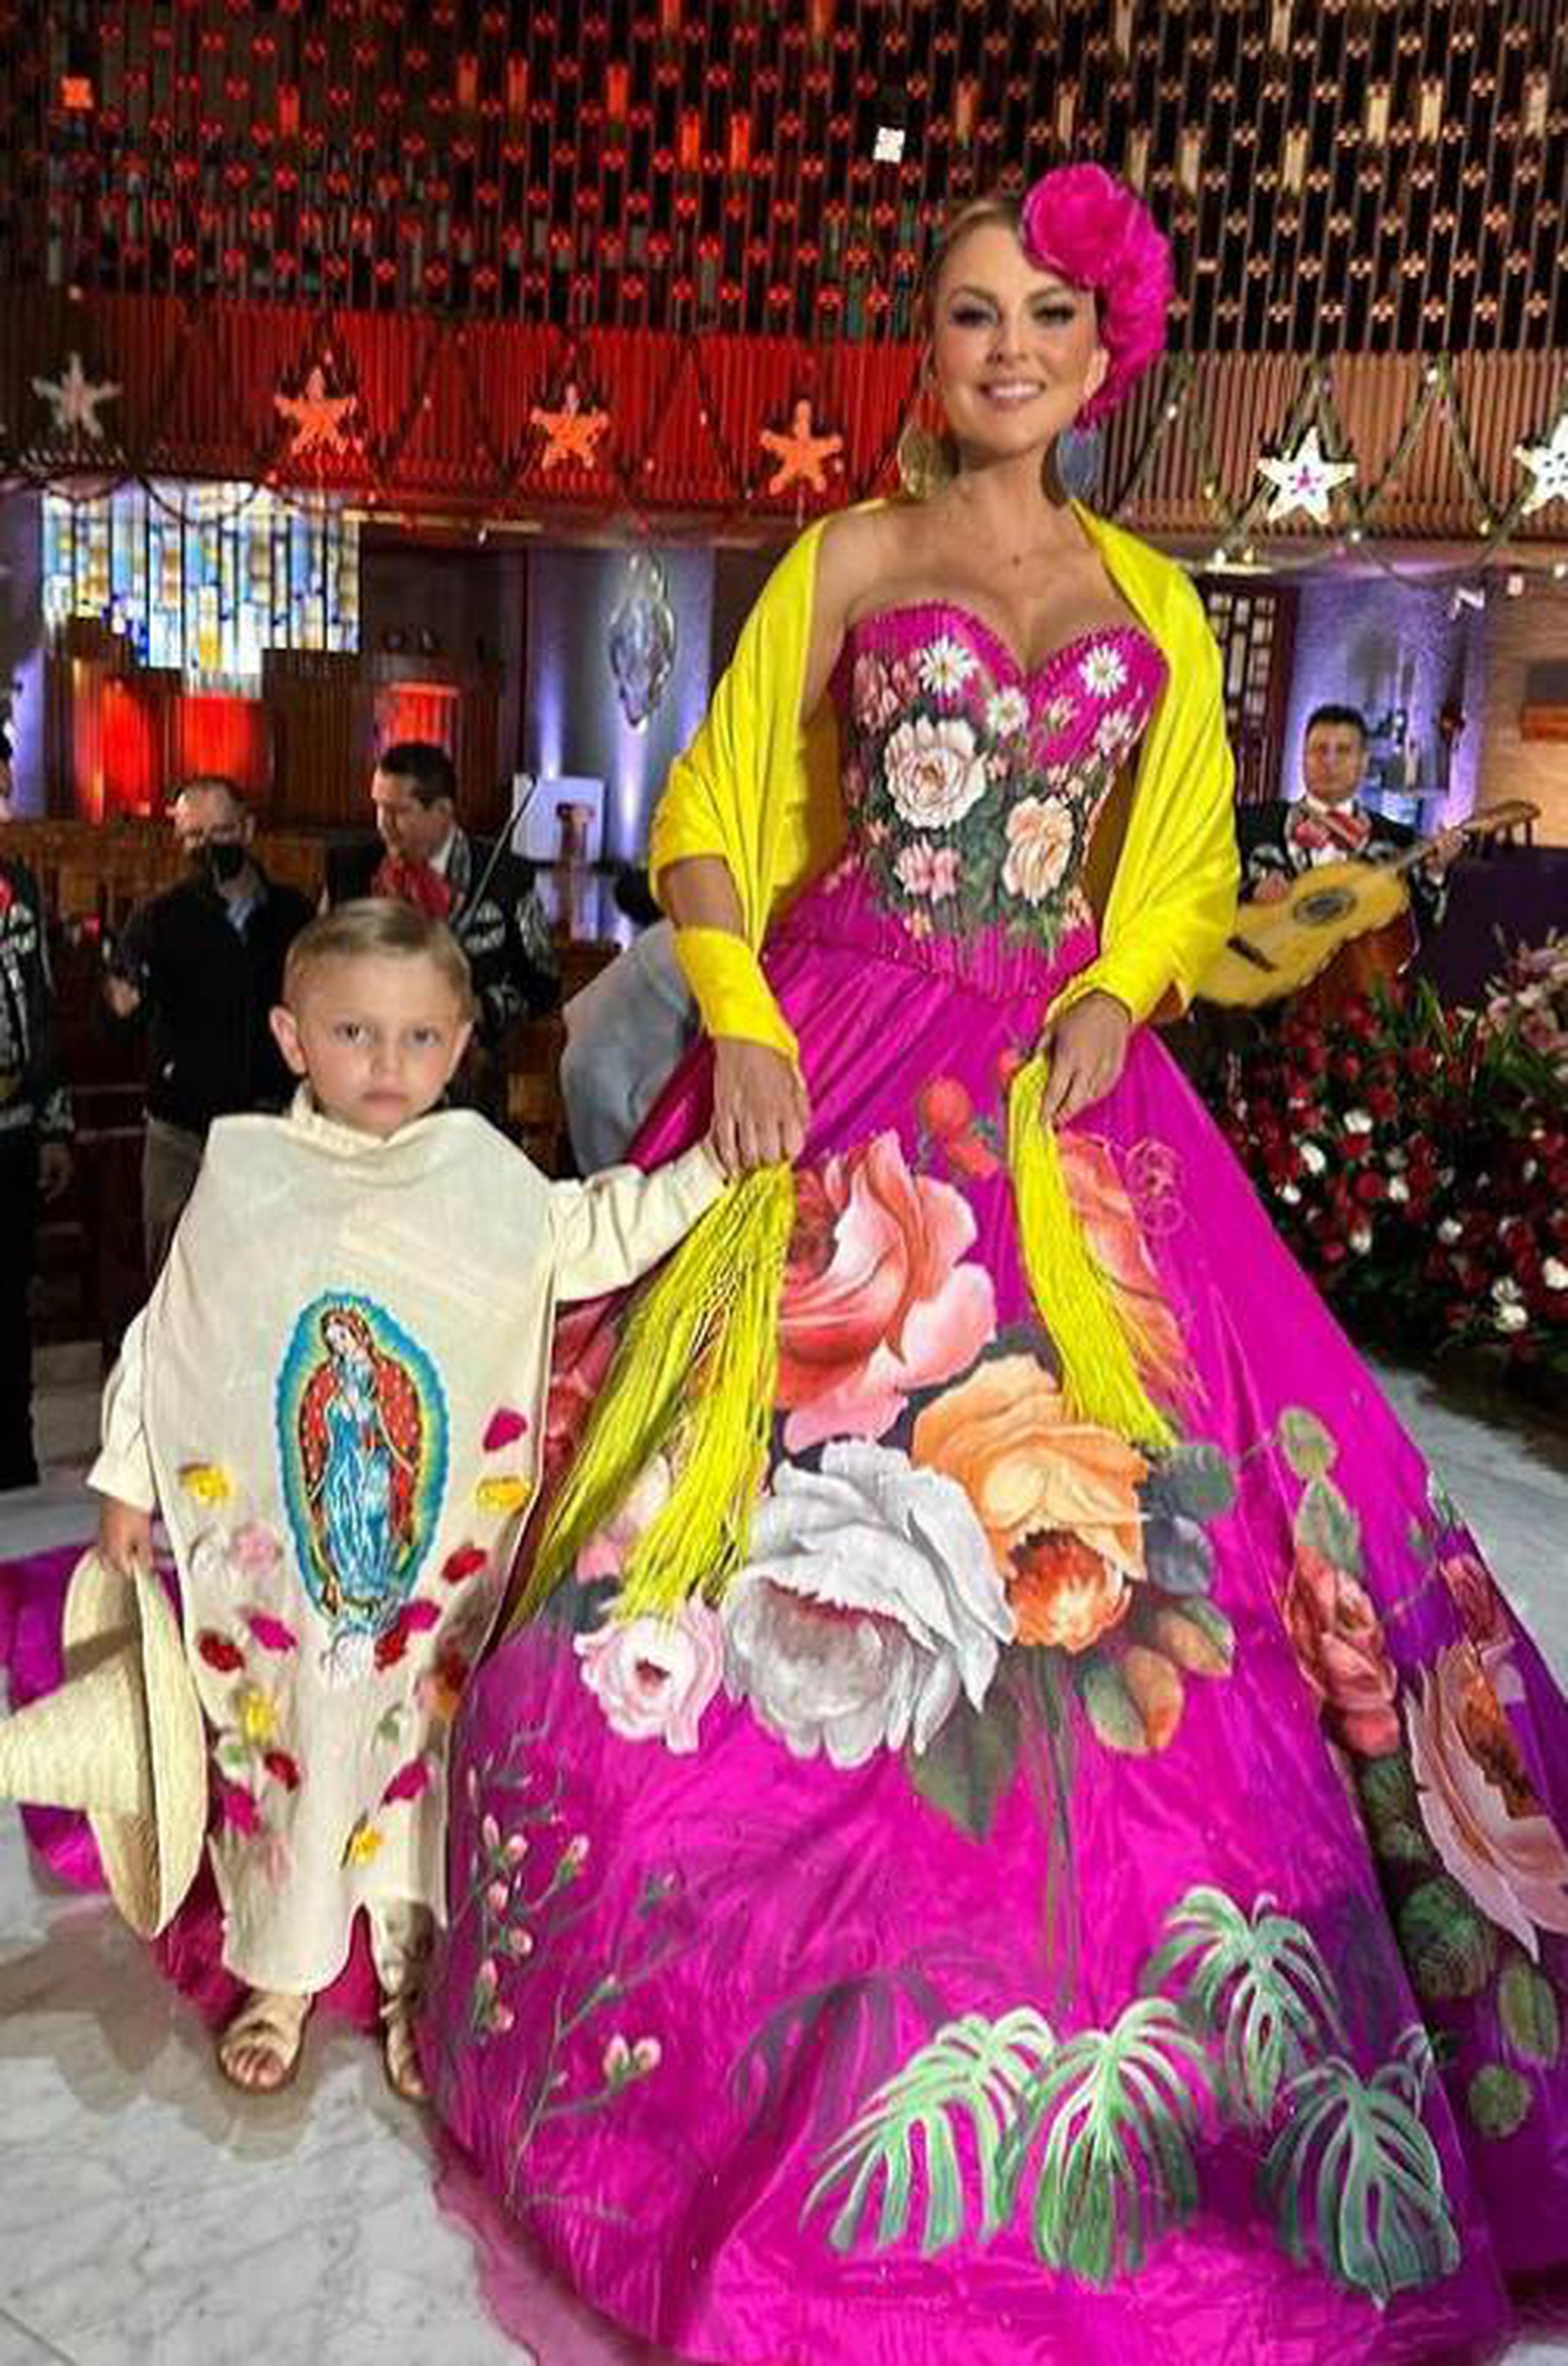 La actriz Marjorie de Souza vistió a su hijo, Matías, de Juan Diego para darle una visita a la Virgen de Guadalupe.